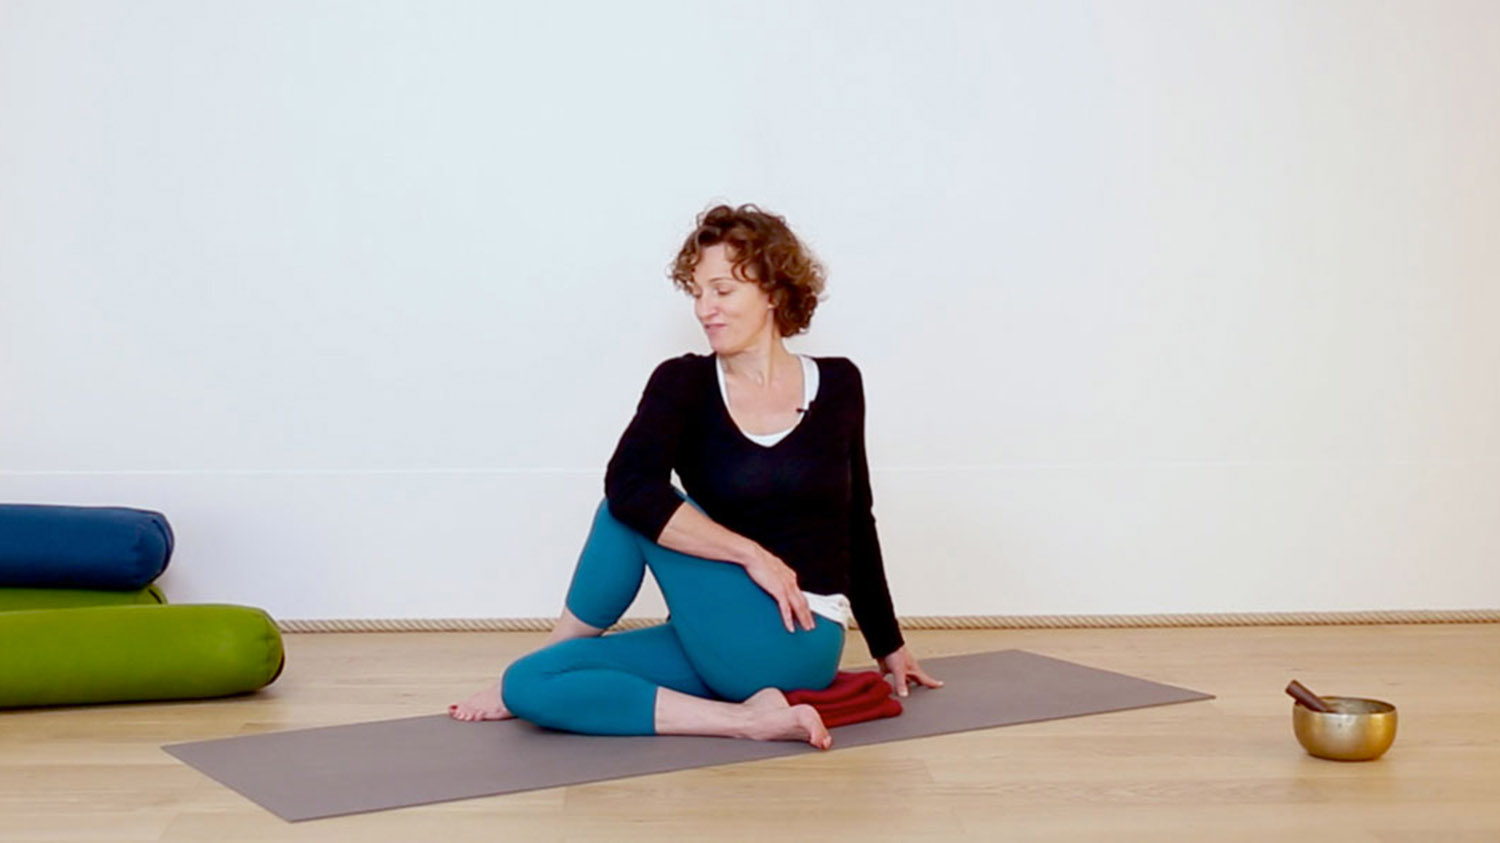 La demi-torsion | Cours de yoga en ligne avec Delphine Denis | Hatha Yoga doux